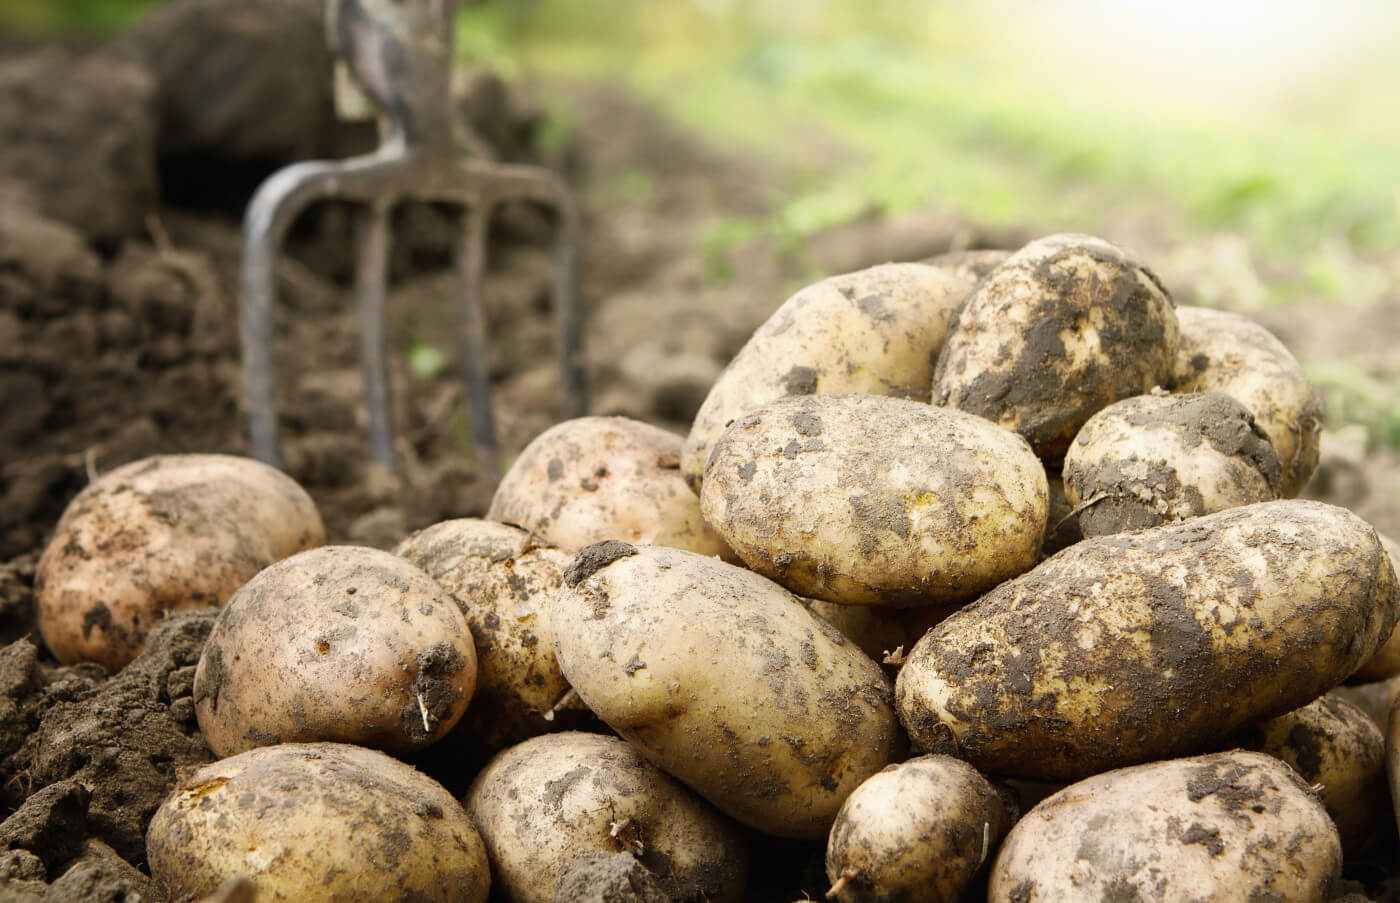 Seed potatoes Ireland, seed potatoes in Ireland, first earlies seed potatoes, maincrop seed potatoes growing in a field